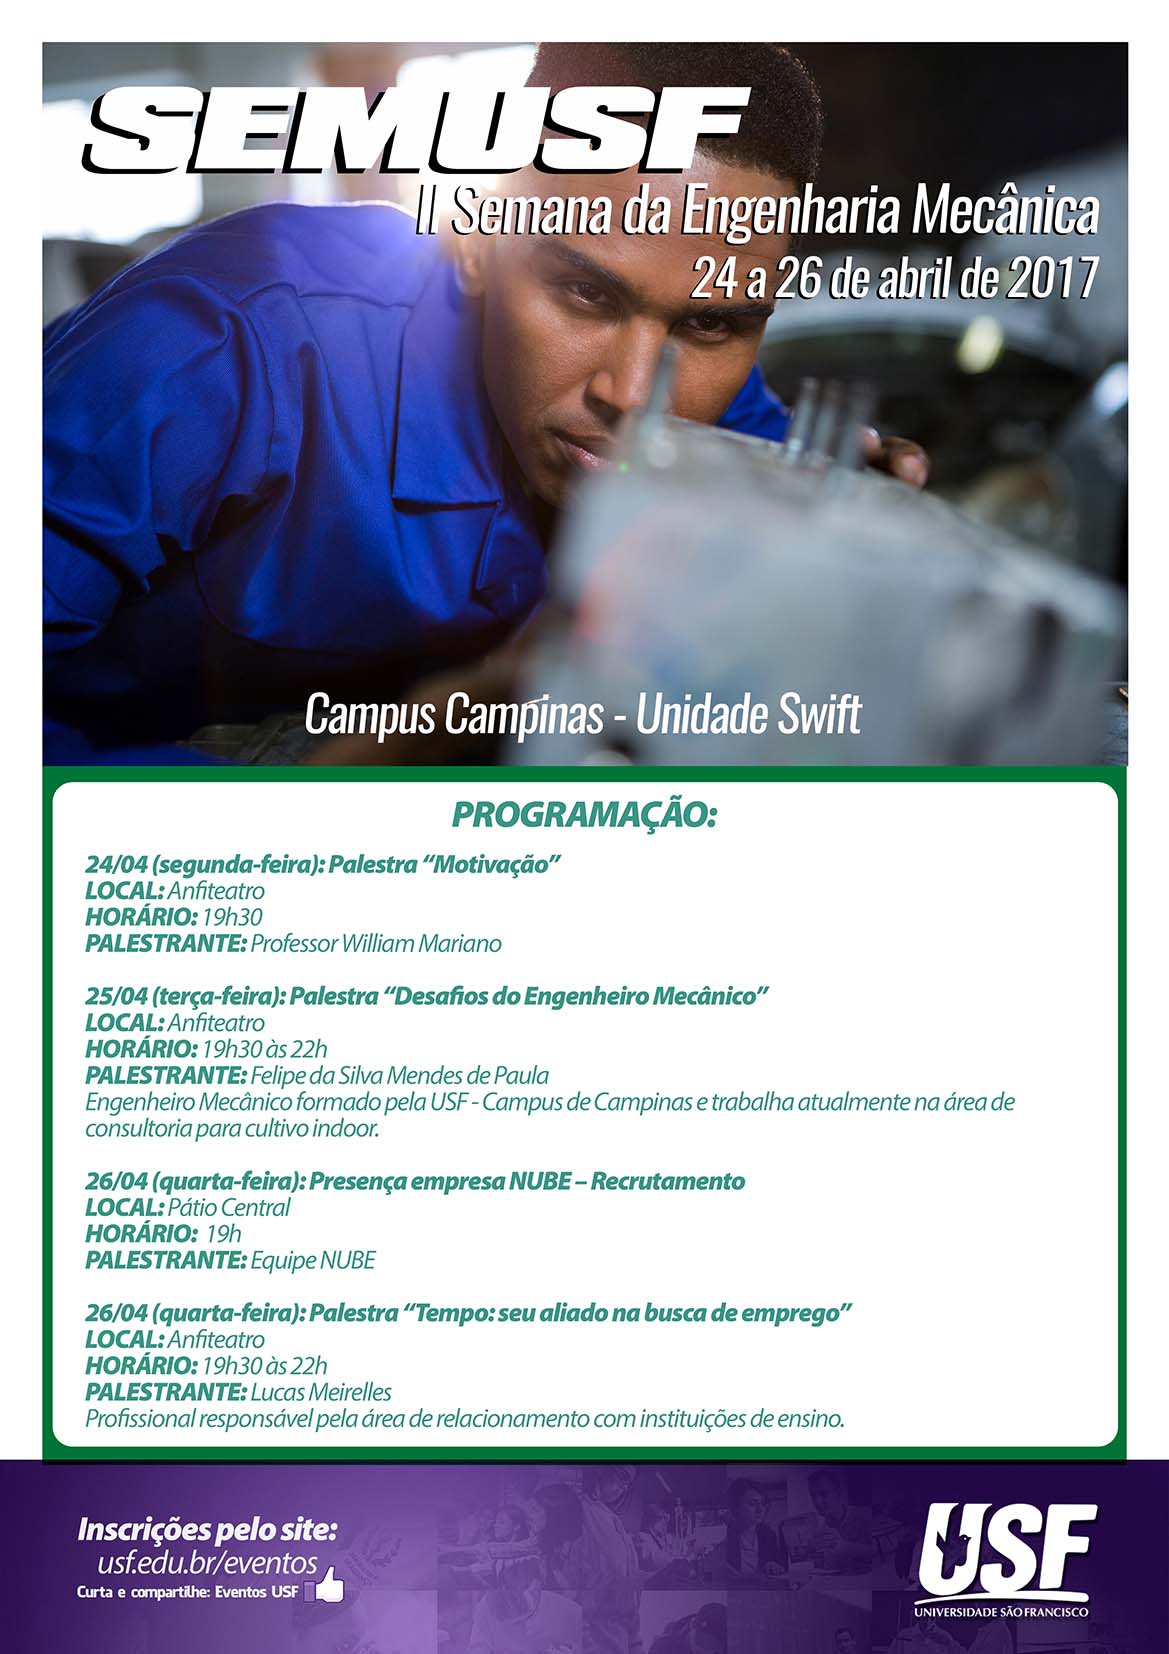 SEMUSF – Semana da Engenharia Mecânica – Campus Campinas